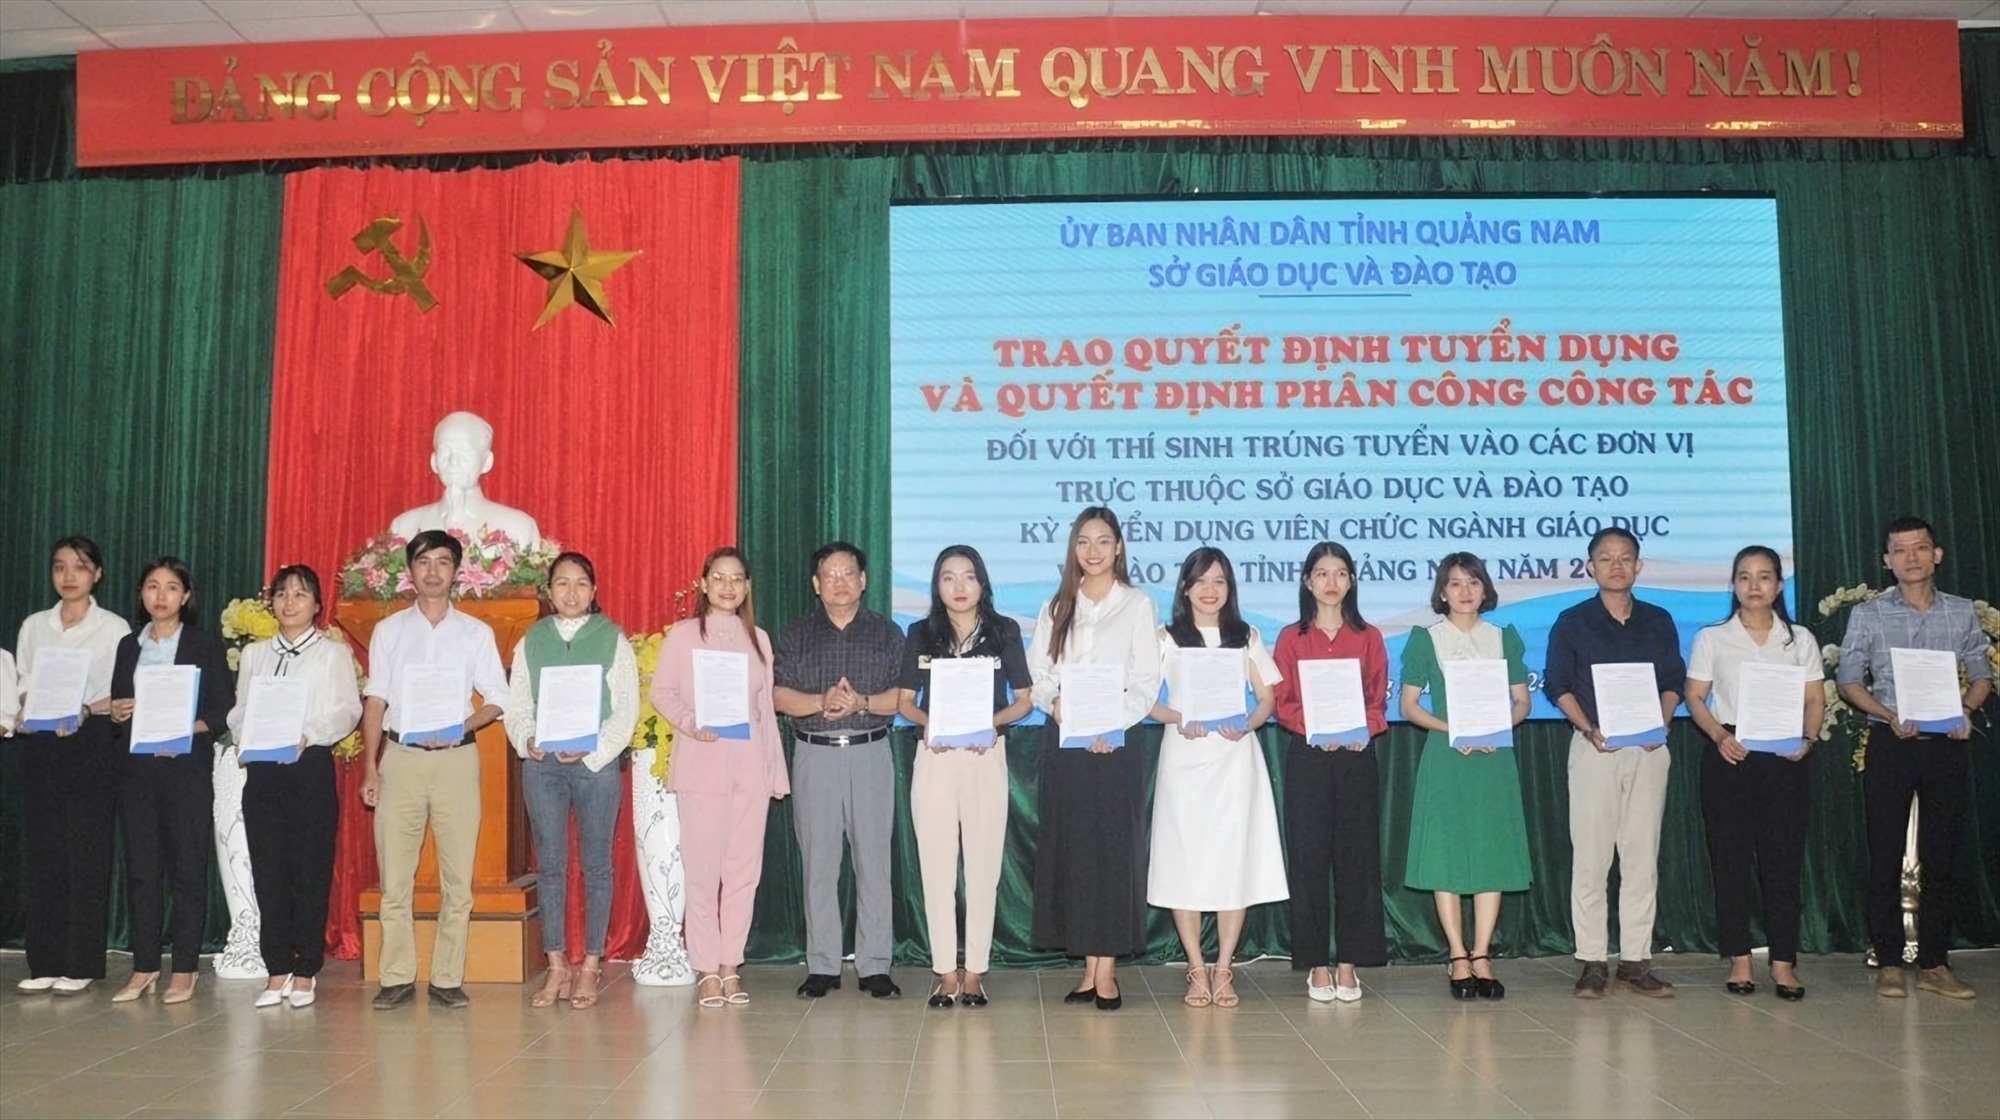 Quảng Nam đang áp dụng chính sách tuyển dụng, thu hút sinh viên tốt nghiệp đại học sư phạm xuất sắc để nâng cao chất lượng nhân lực cho ngành giáo dục. Ảnh Hoàng Bin